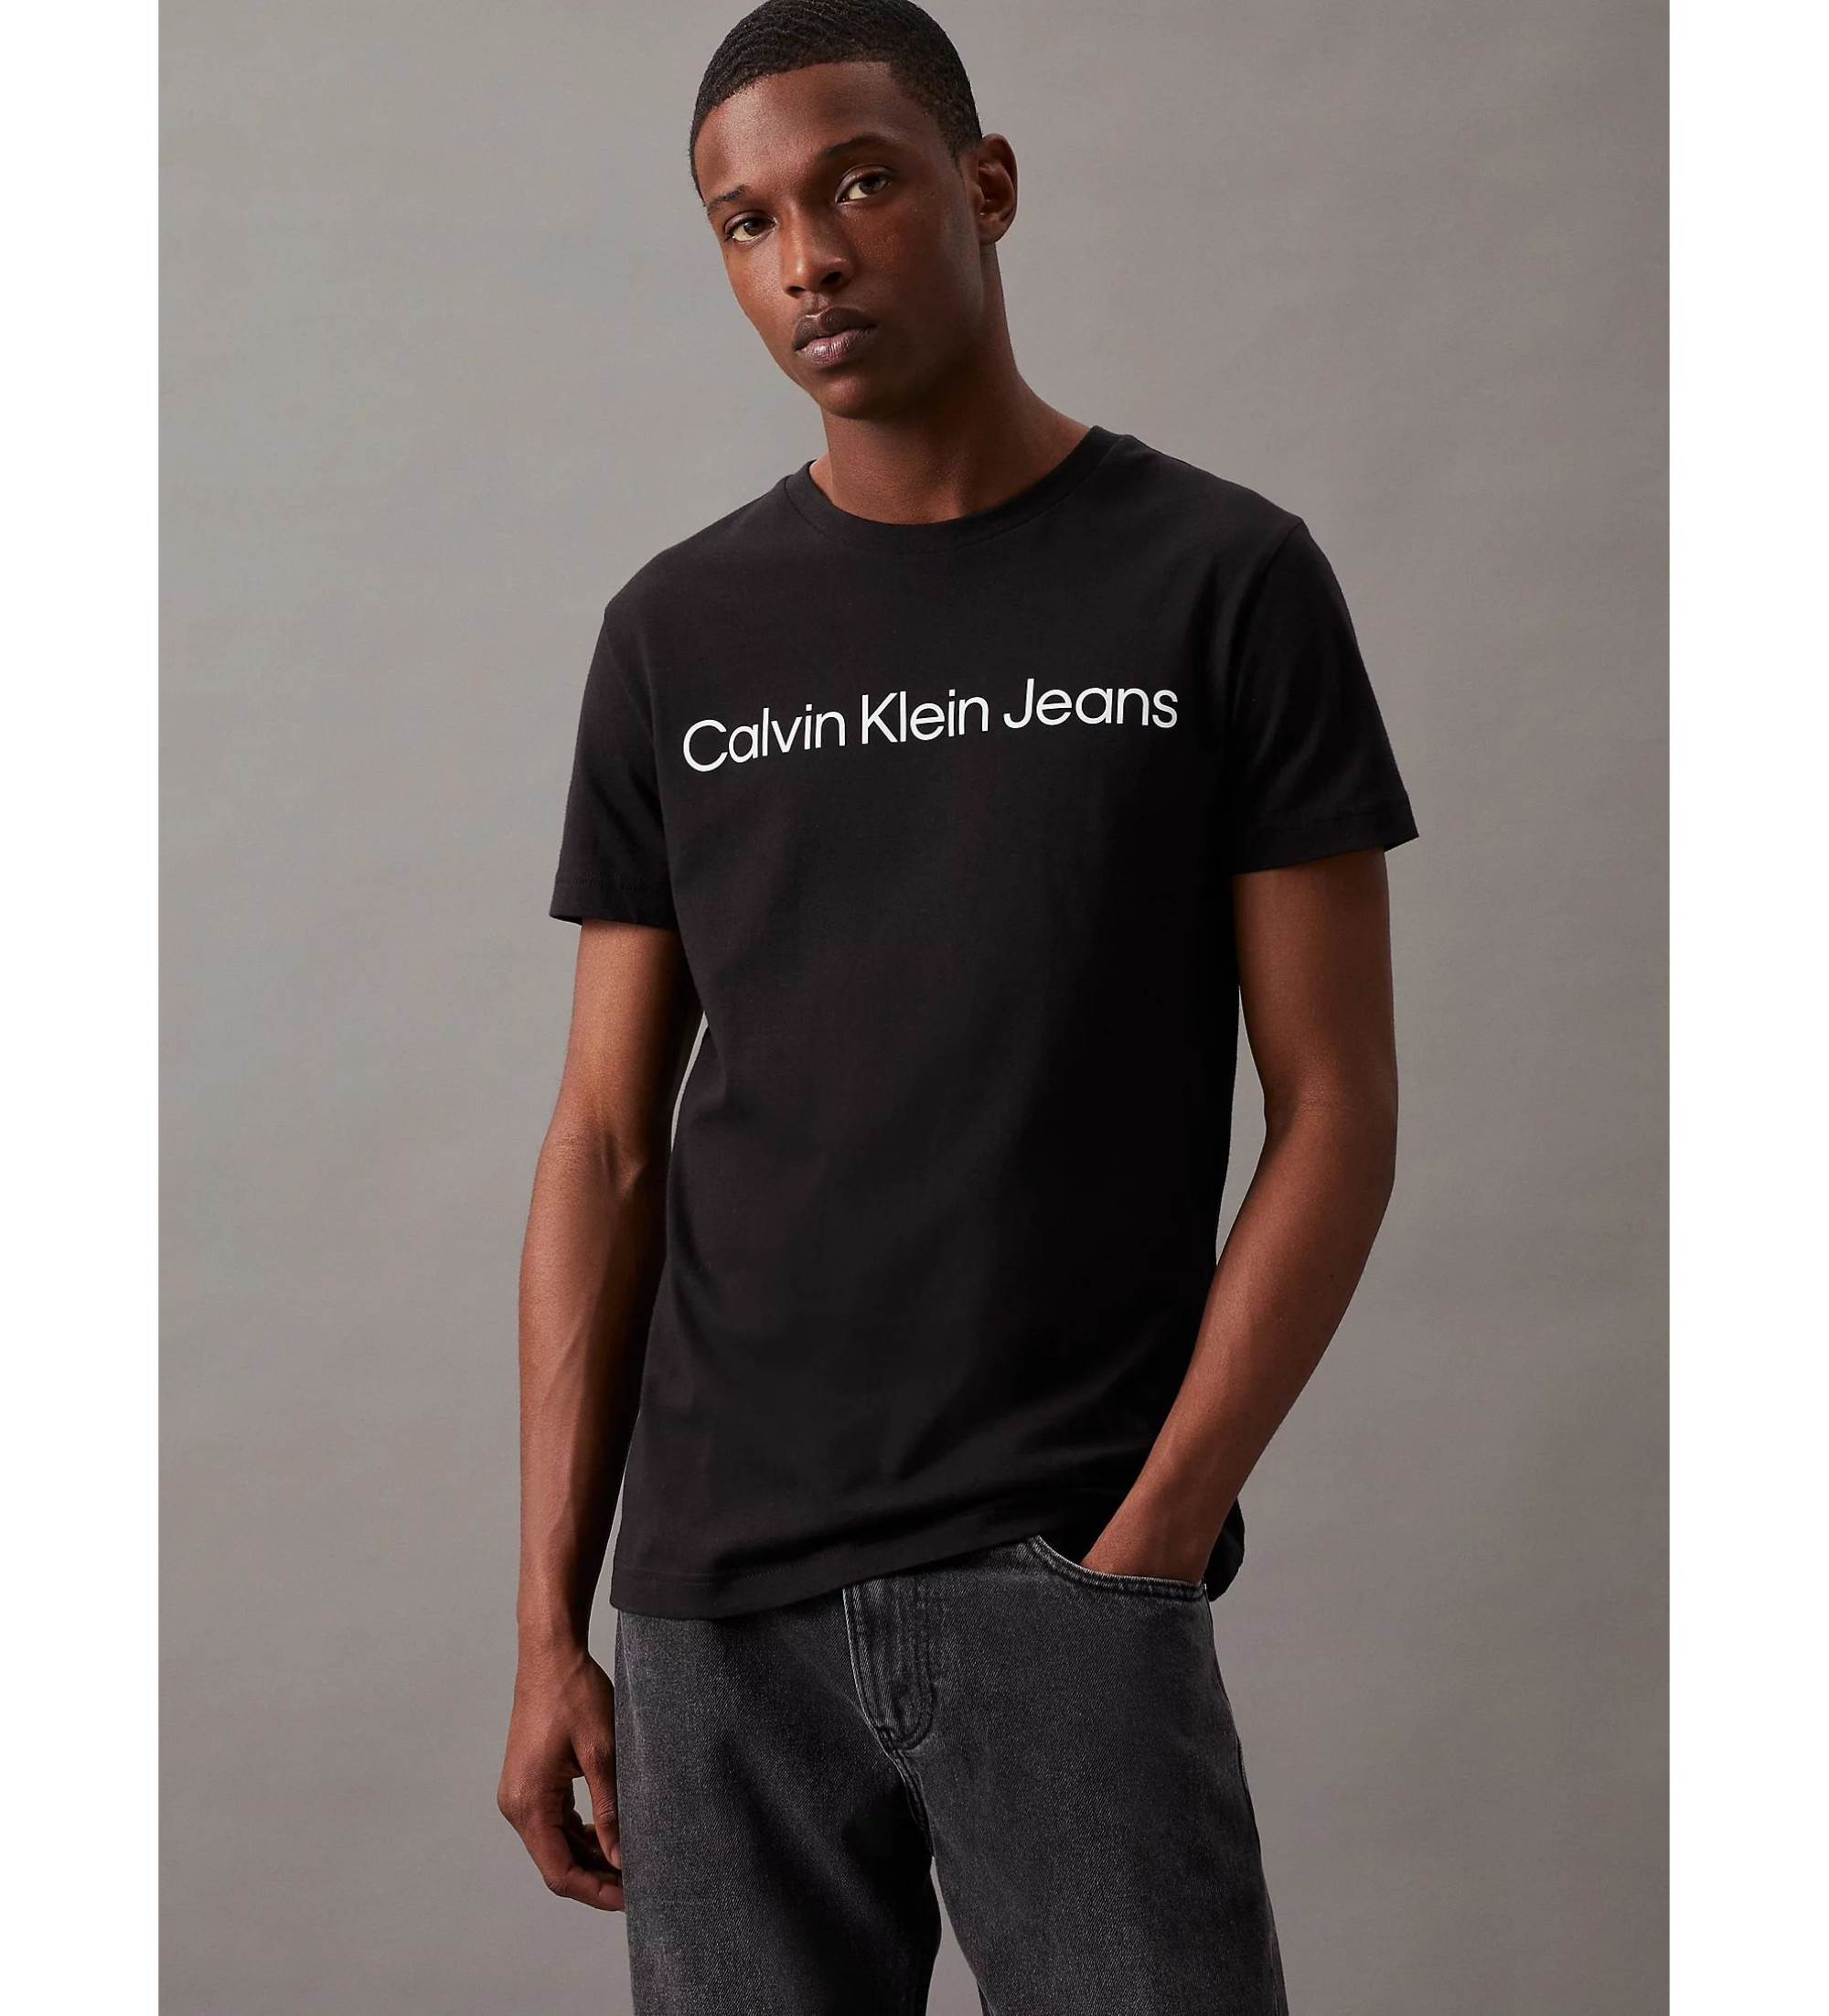 Calvin Klein Jeans T-shirt Slim Logo preta - Esdemarca Loja moda, calçados  e acessórios - melhores marcas de calçados e calçados de grife